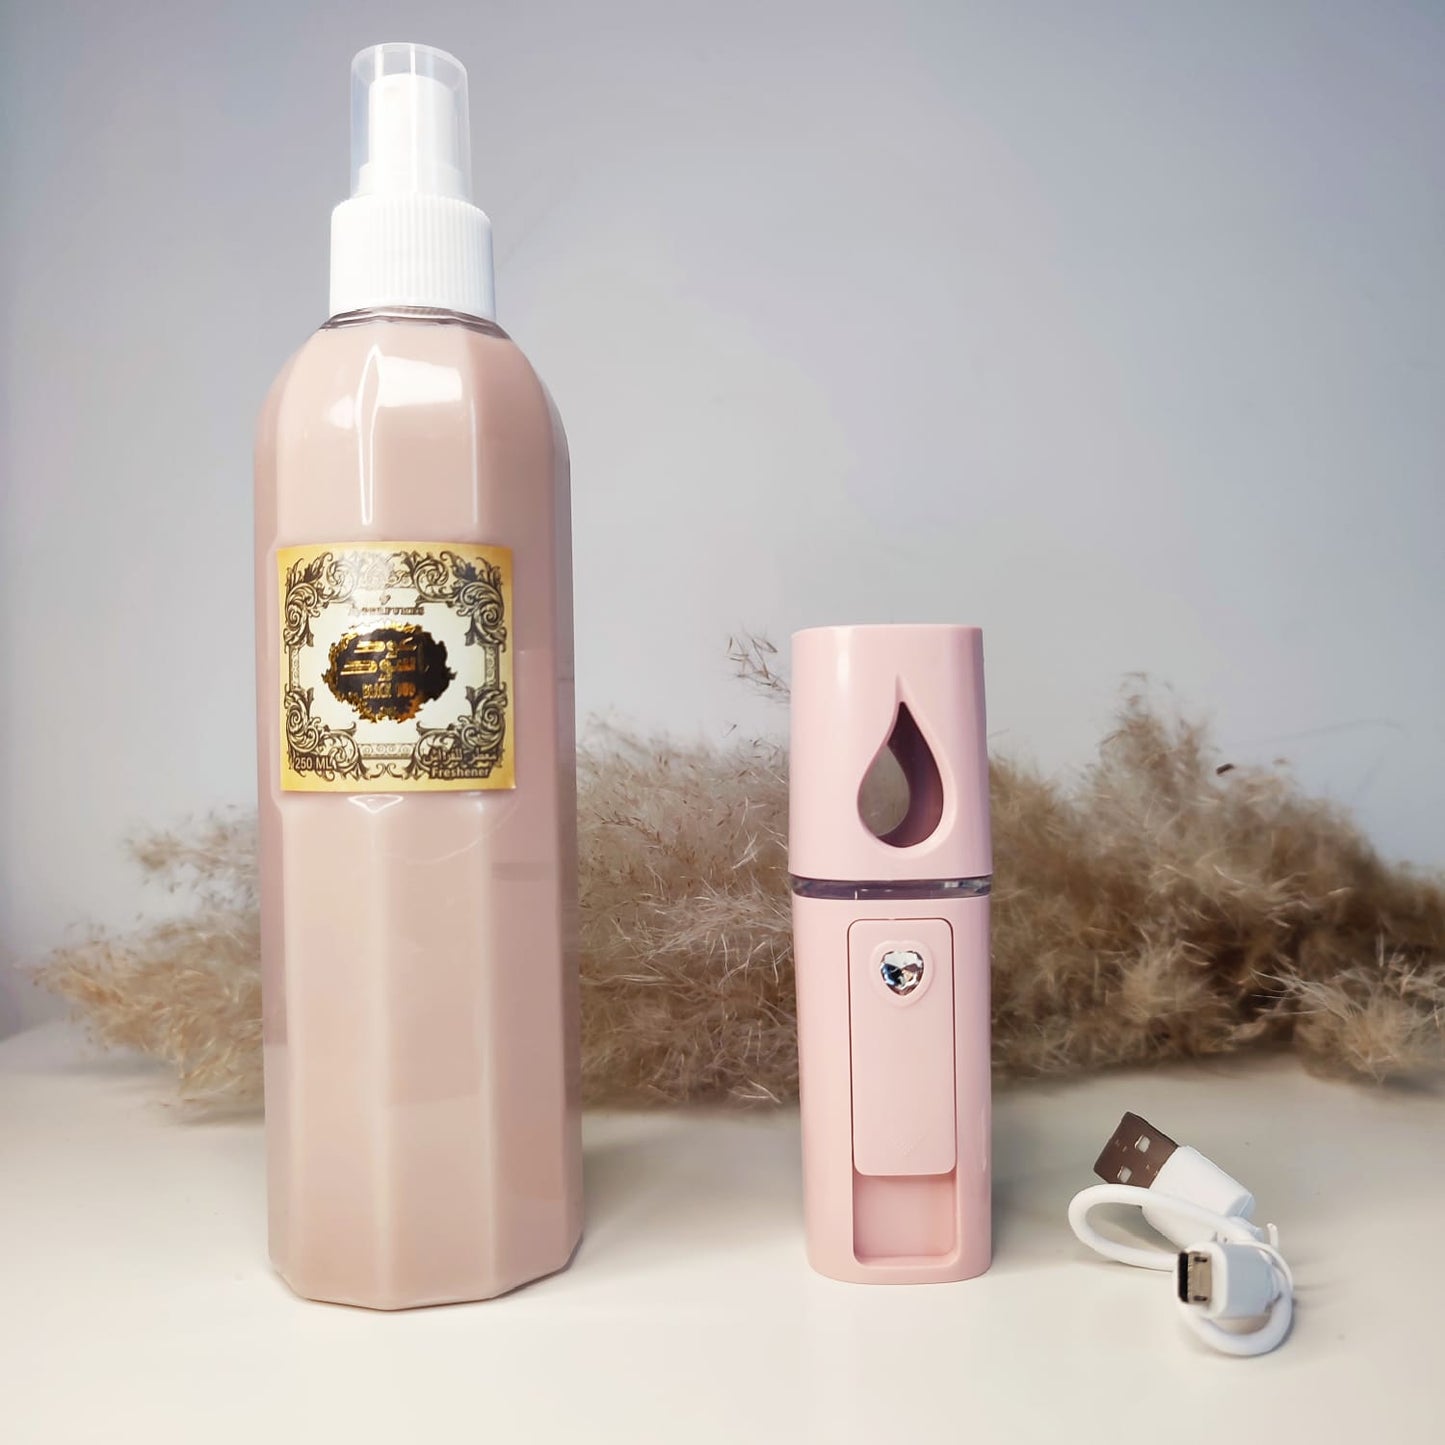 Spray d'Intérieur Musc Tahara - Parfum Délicat pour une Atmosphère Apaisante